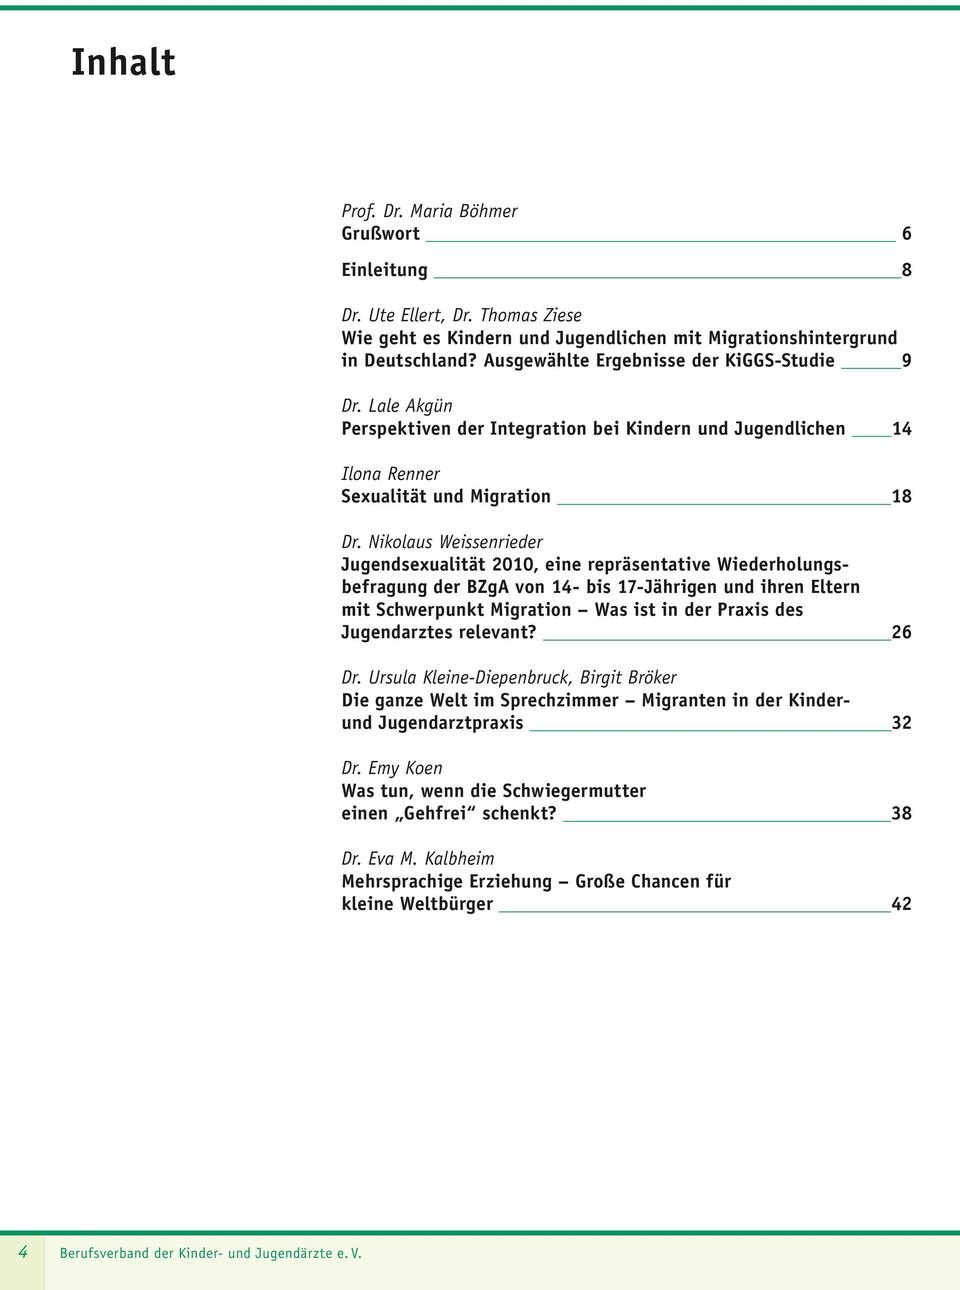 Nikolaus Weissenrieder Jugendsexualität 2010, eine repräsentative Wiederholungsbefragung der BZgA von 14- bis 17-Jährigen und ihren Eltern mit Schwerpunkt Migration Was ist in der Praxis des